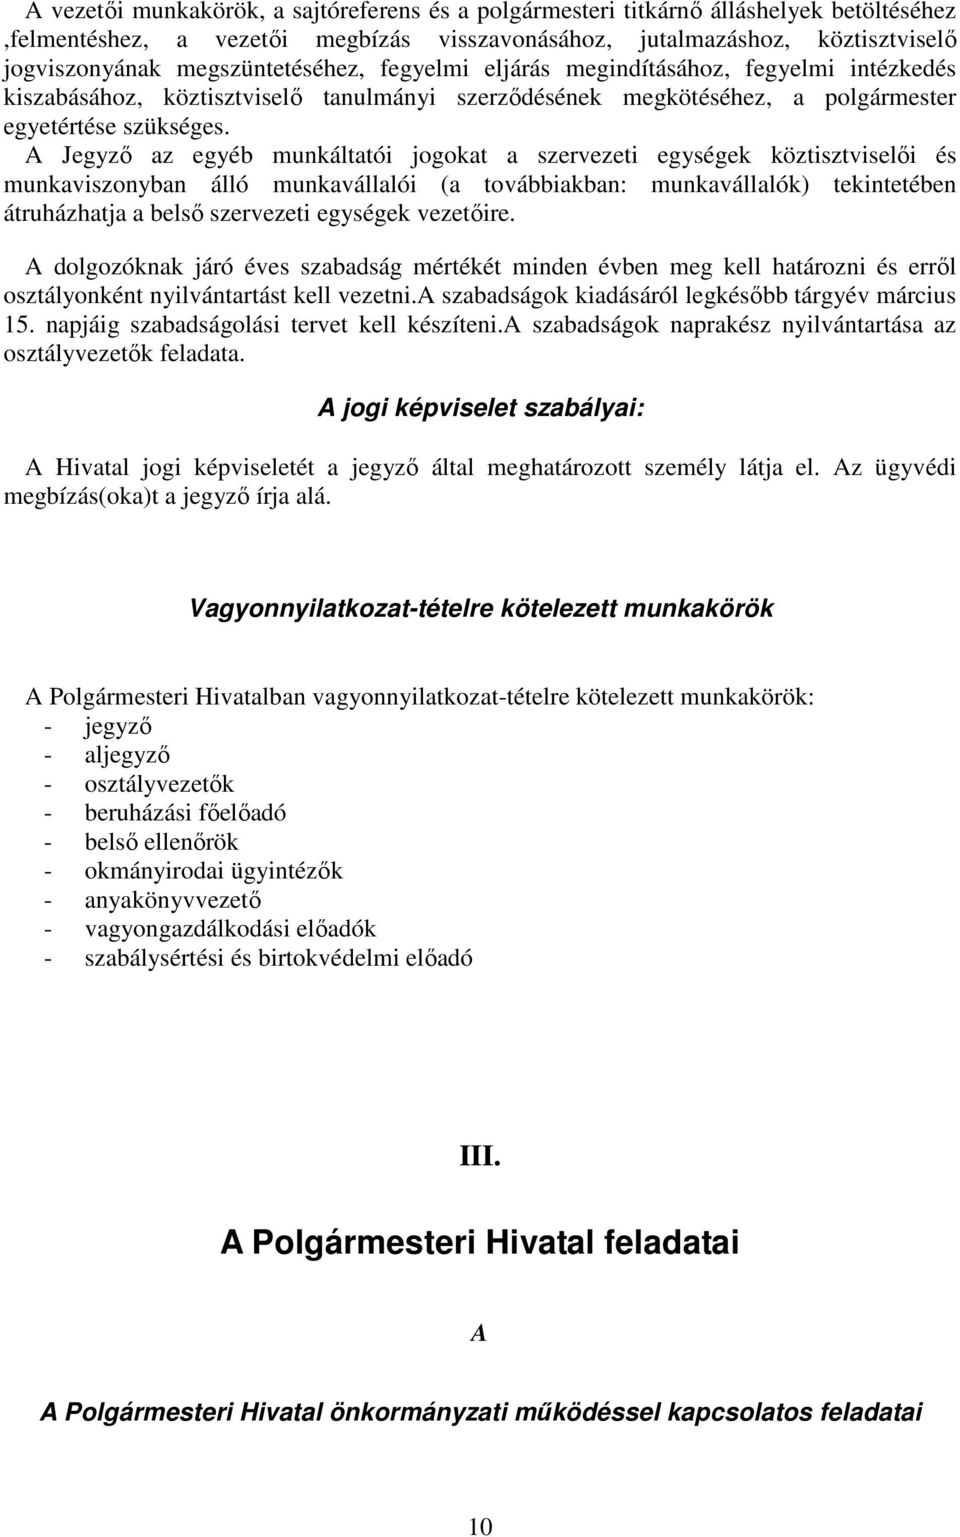 A Jegyzı az egyéb munkáltatói jogokat a szervezeti egységek köztisztviselıi és munkaviszonyban álló munkavállalói (a továbbiakban: munkavállalók) tekintetében átruházhatja a belsı szervezeti egységek